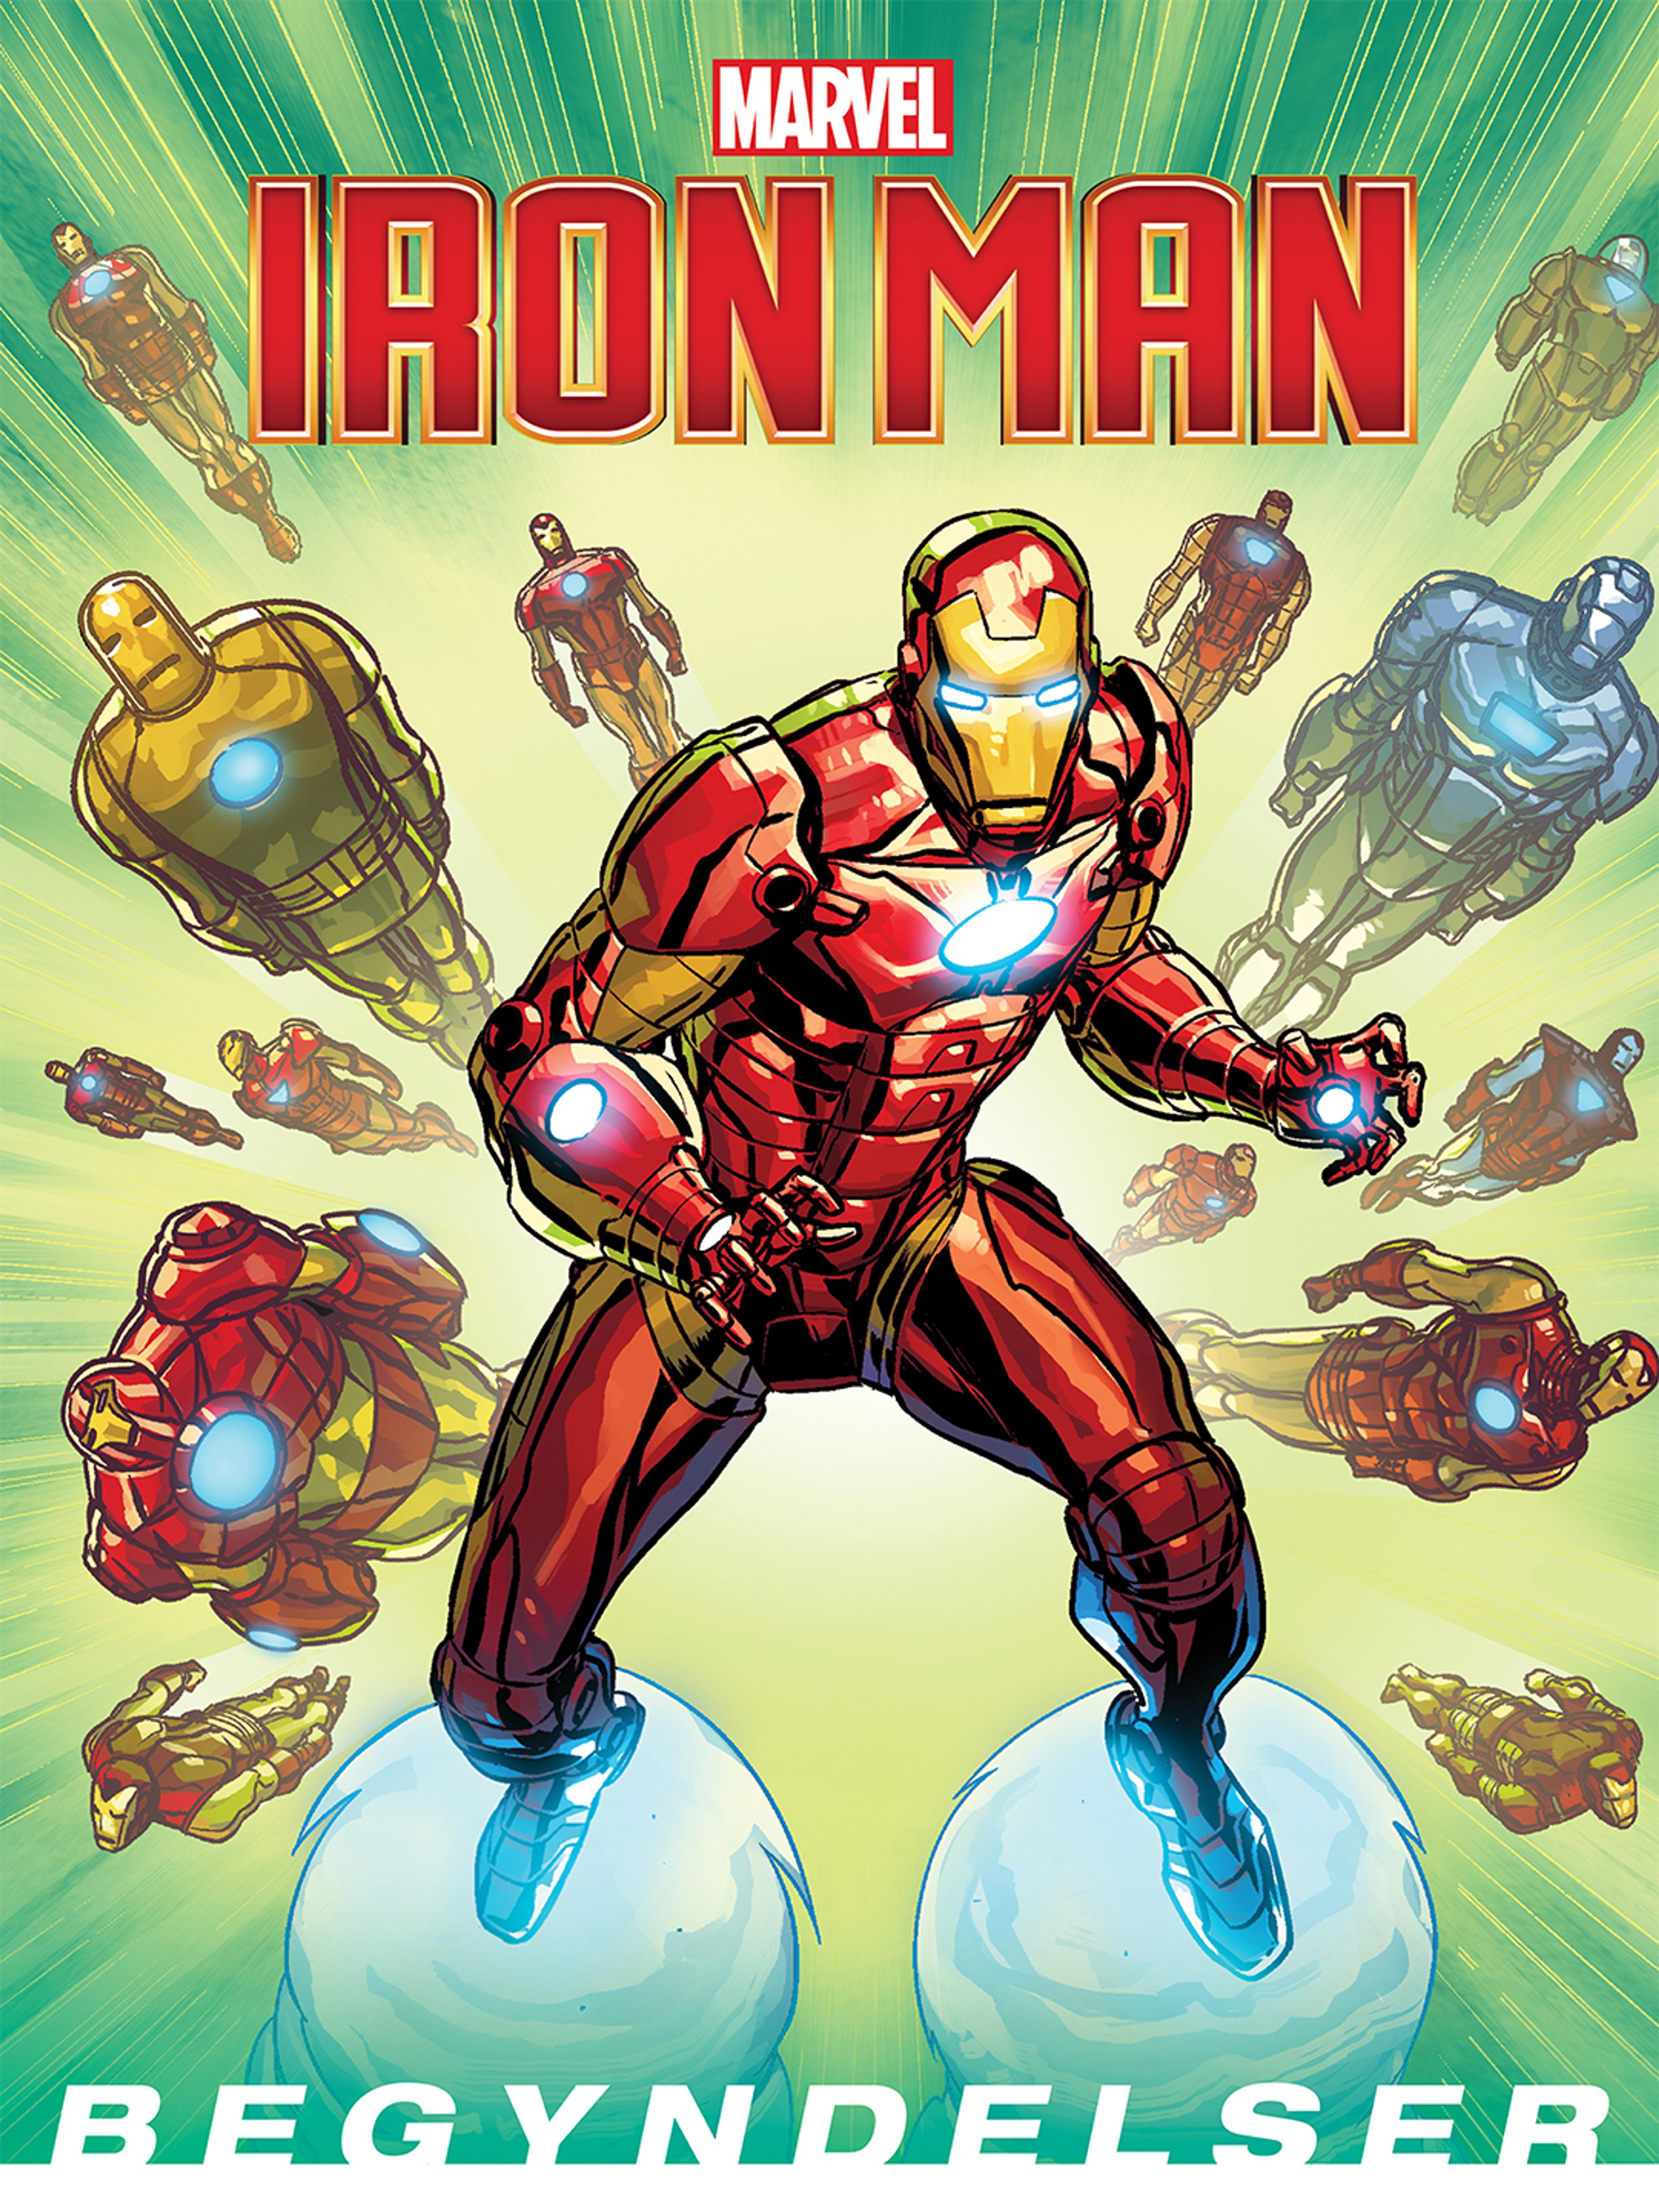 Iron Man: Begyndelser